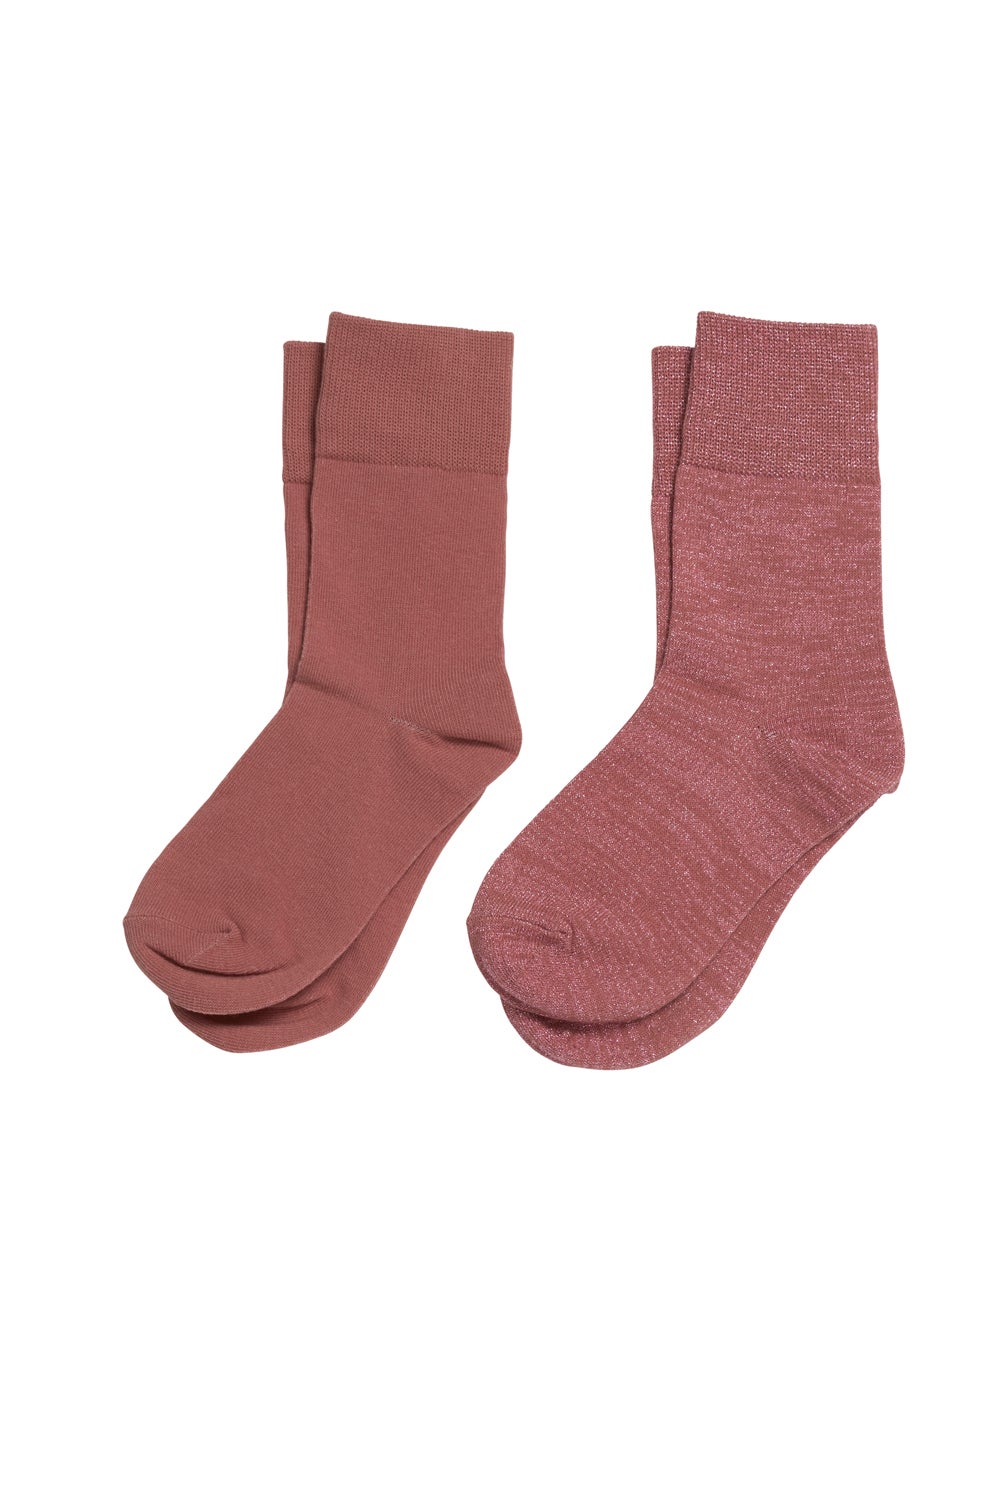 French Rose Socks 2 Pack